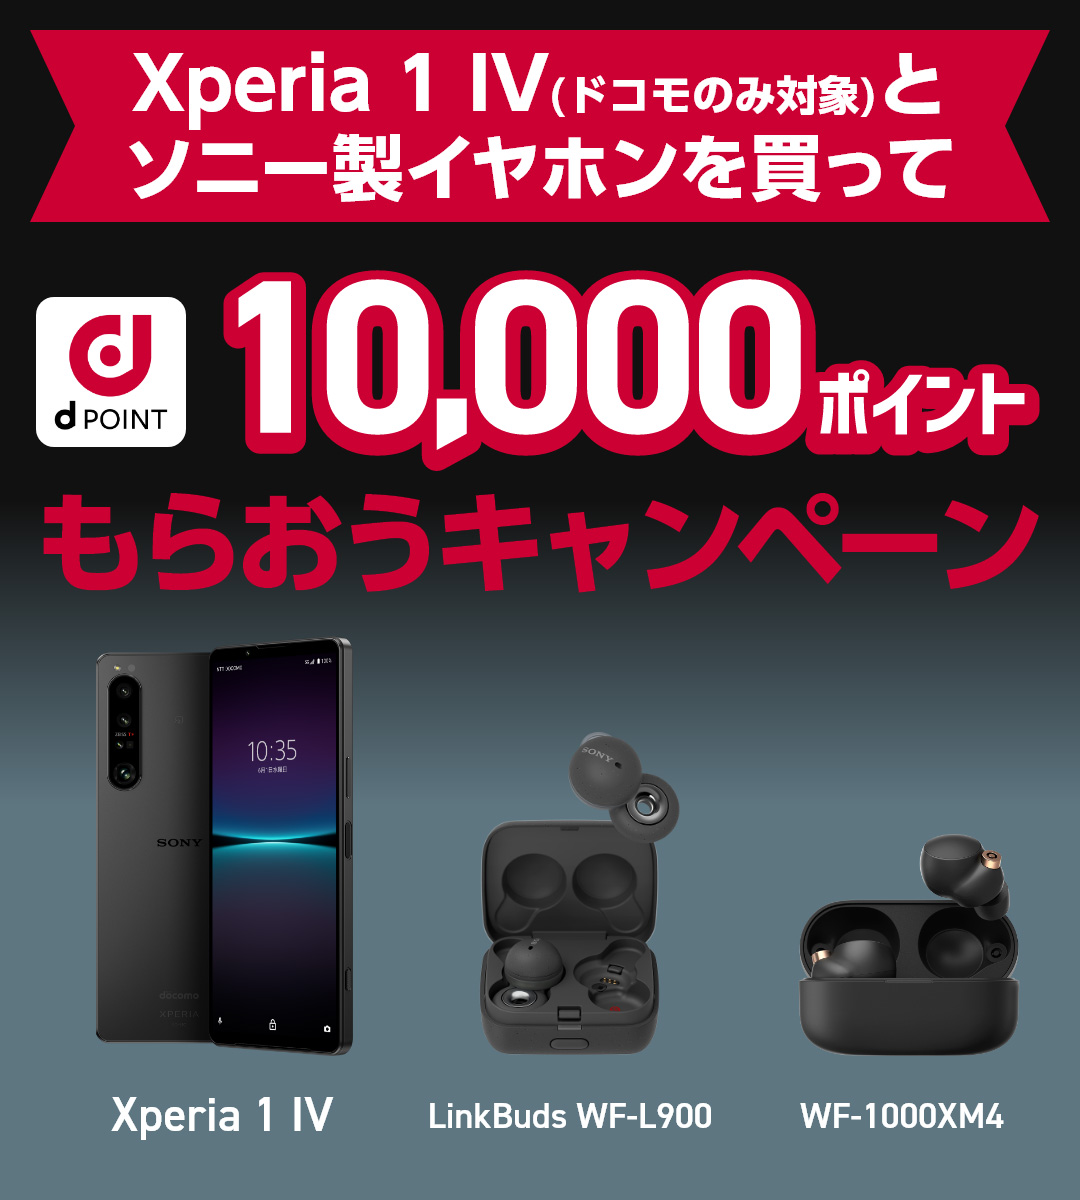 Xperia 1 IV（ドコモのみ対象）とソニー製イヤホンを買ってd POINT 10,000ポイントもらおうキャンペーン